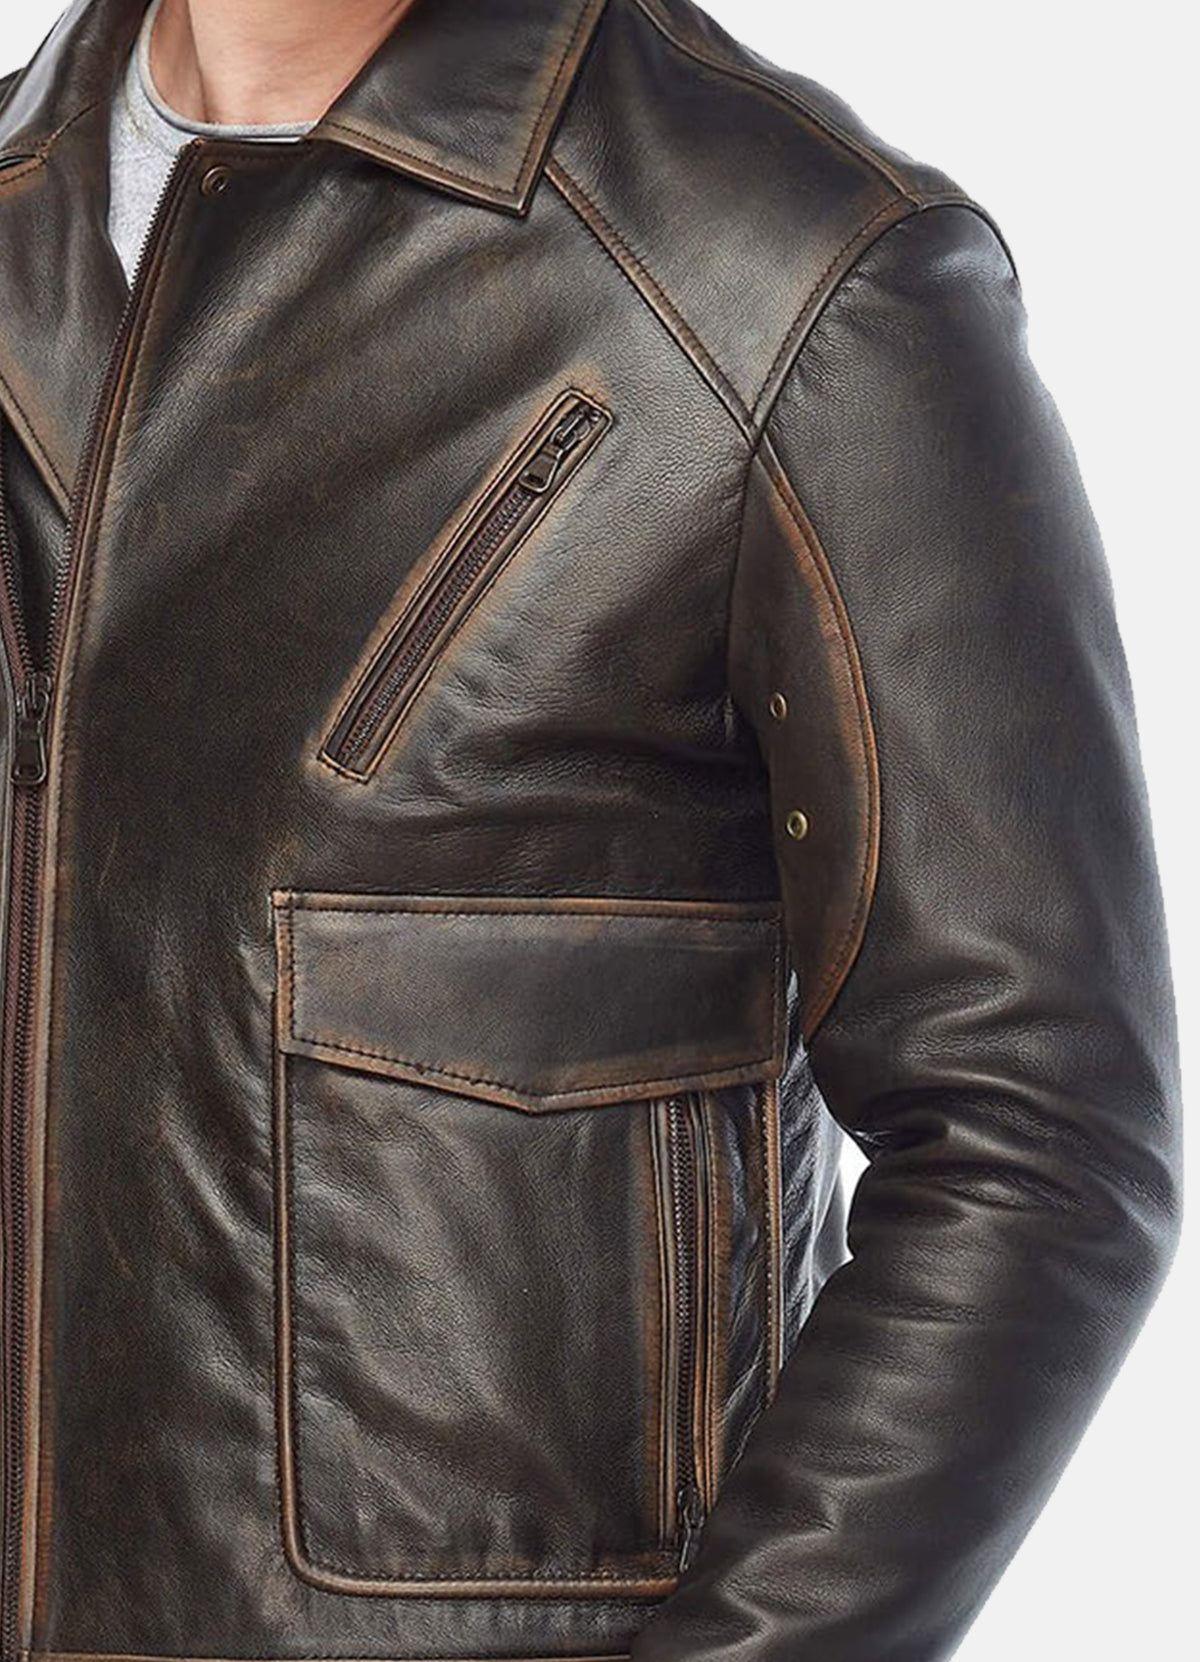 Mens Vintage Distressed Black Biker Leather Jacket